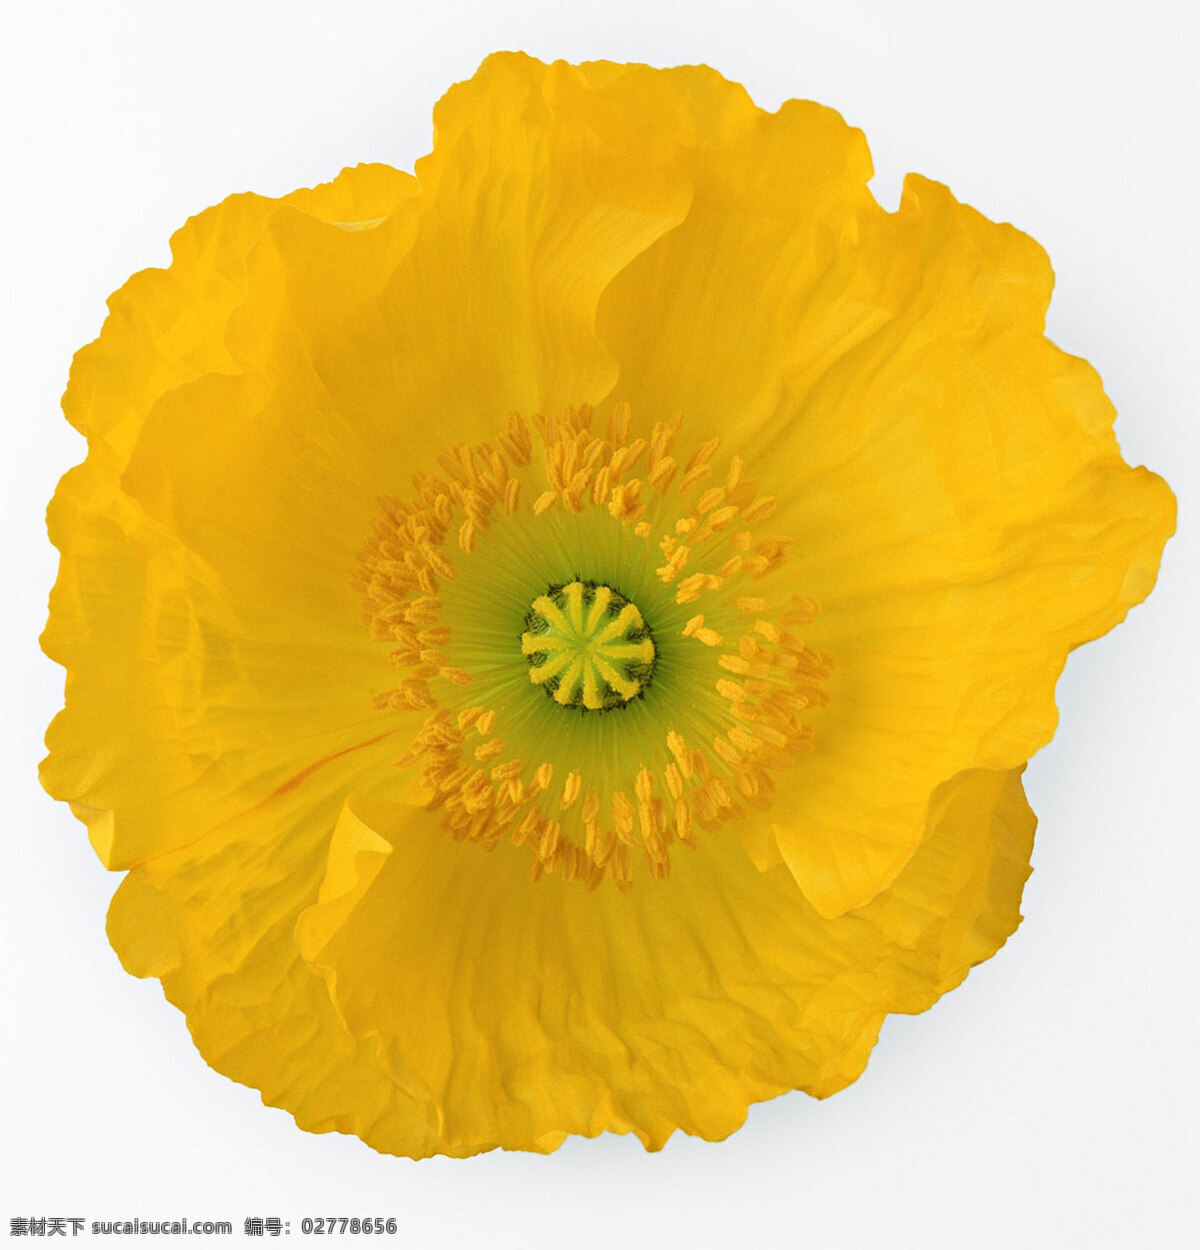 位图免费下载 服装图案 花朵 花卉 位图 植物摄影 面料图库 服装设计 图案花型